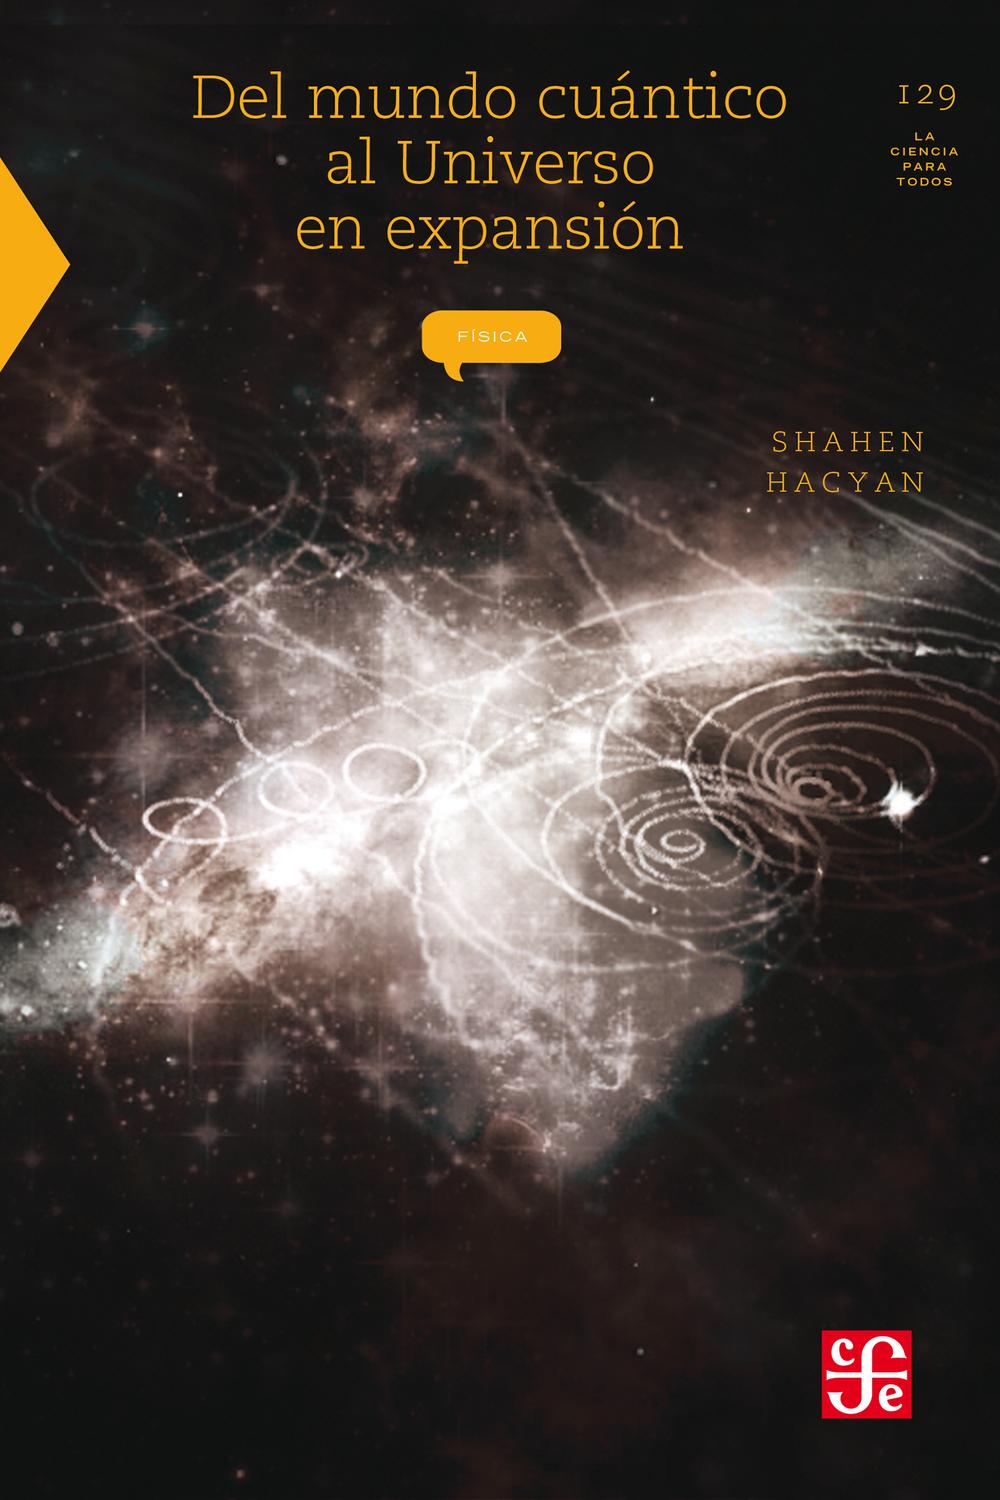 Del mundo cuántico al universo en expansión - Shahen Hacyan